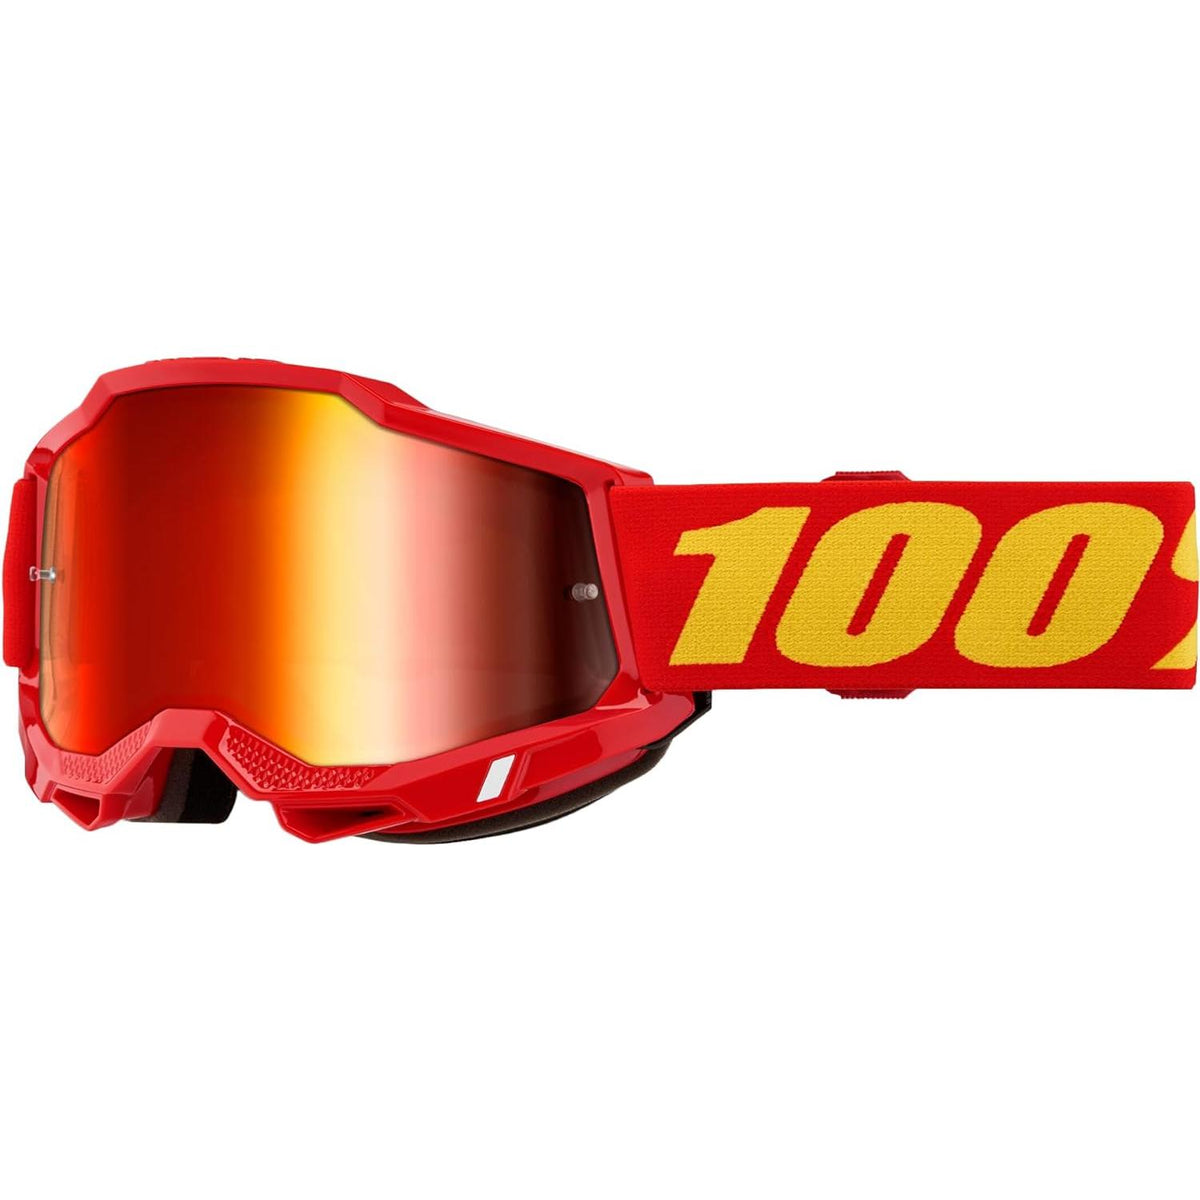 100% Accuri 2 Moto/MTB Goggle - Red; Mirror Red